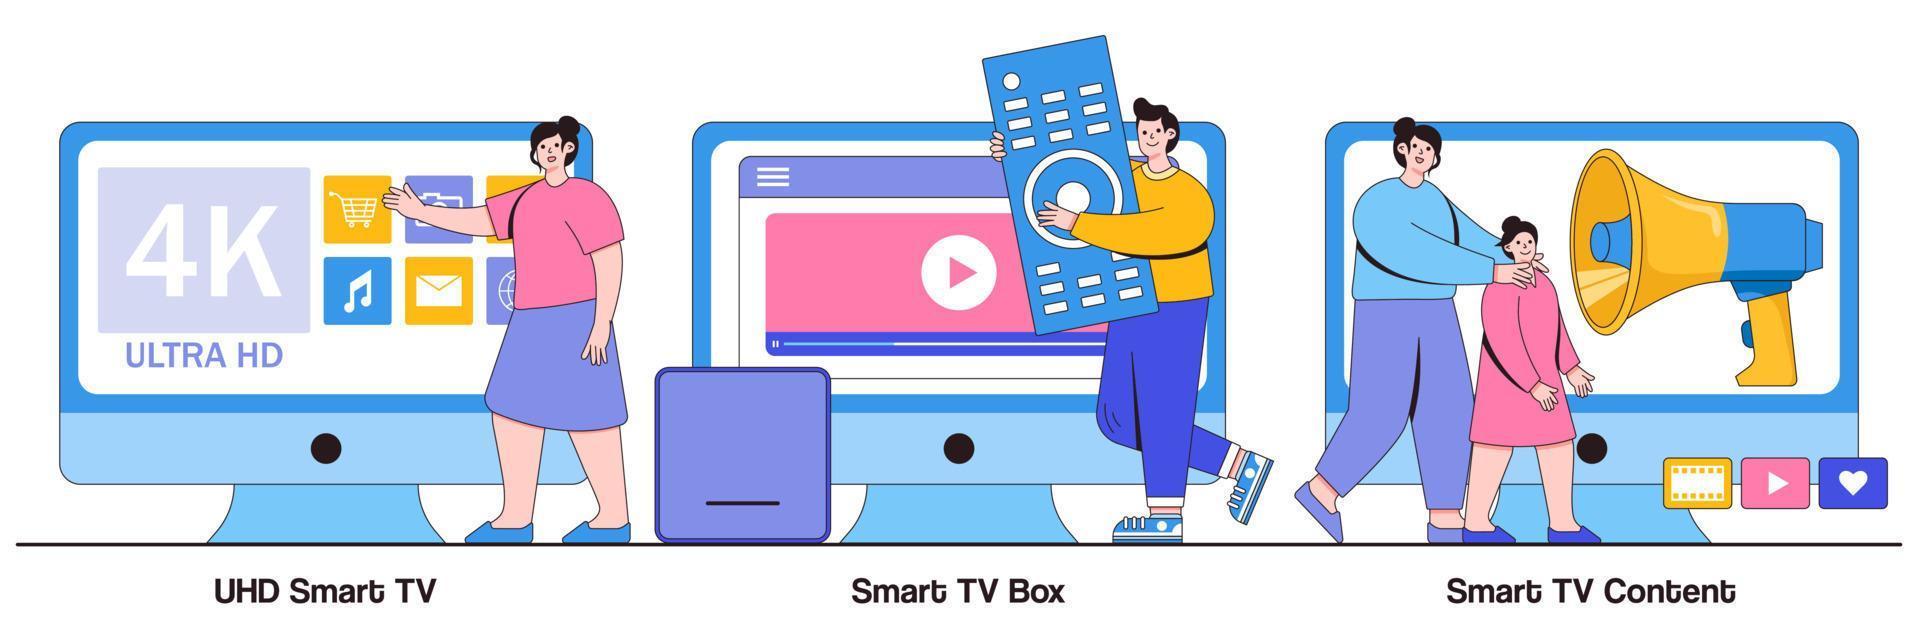 uhd smart tv, smart tv box, conceito de conteúdo de vídeo 4k com pessoas pequenas. assistir tv conjunto de ilustração vetorial. cinema de entretenimento doméstico, serviço de vídeo online, tempo de lazer, metáfora de televisão vetor